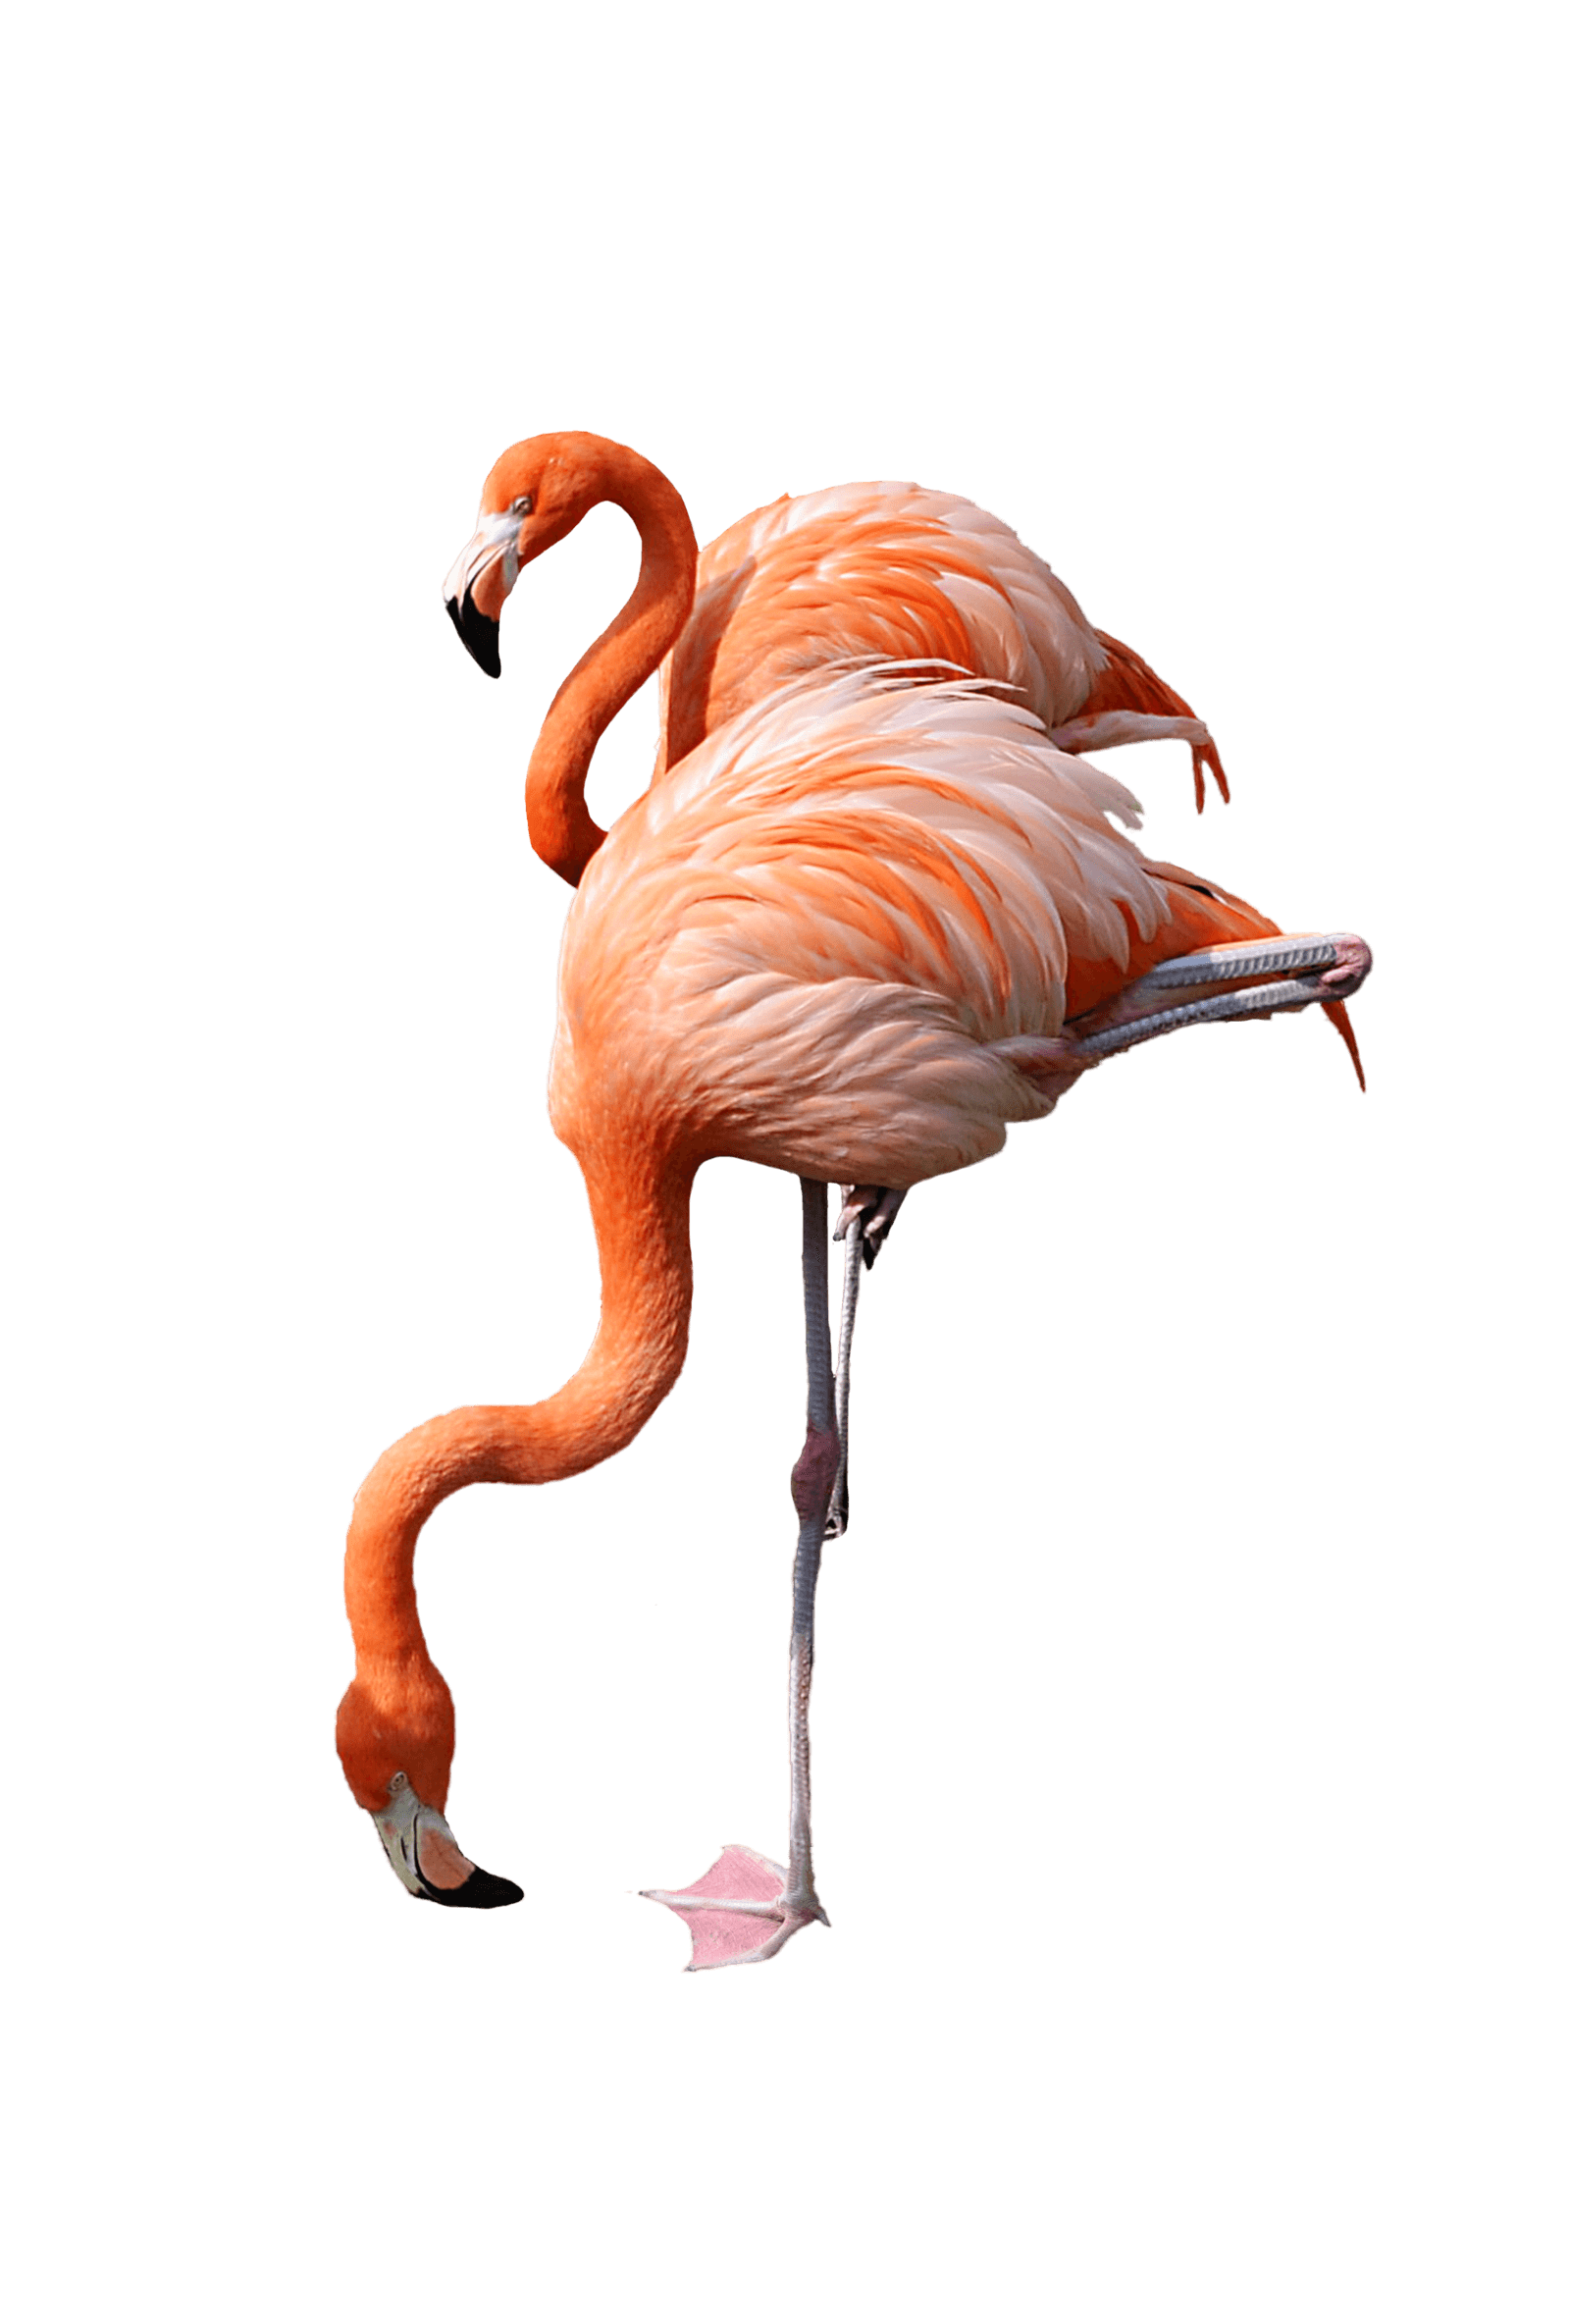 flamingo clipart family